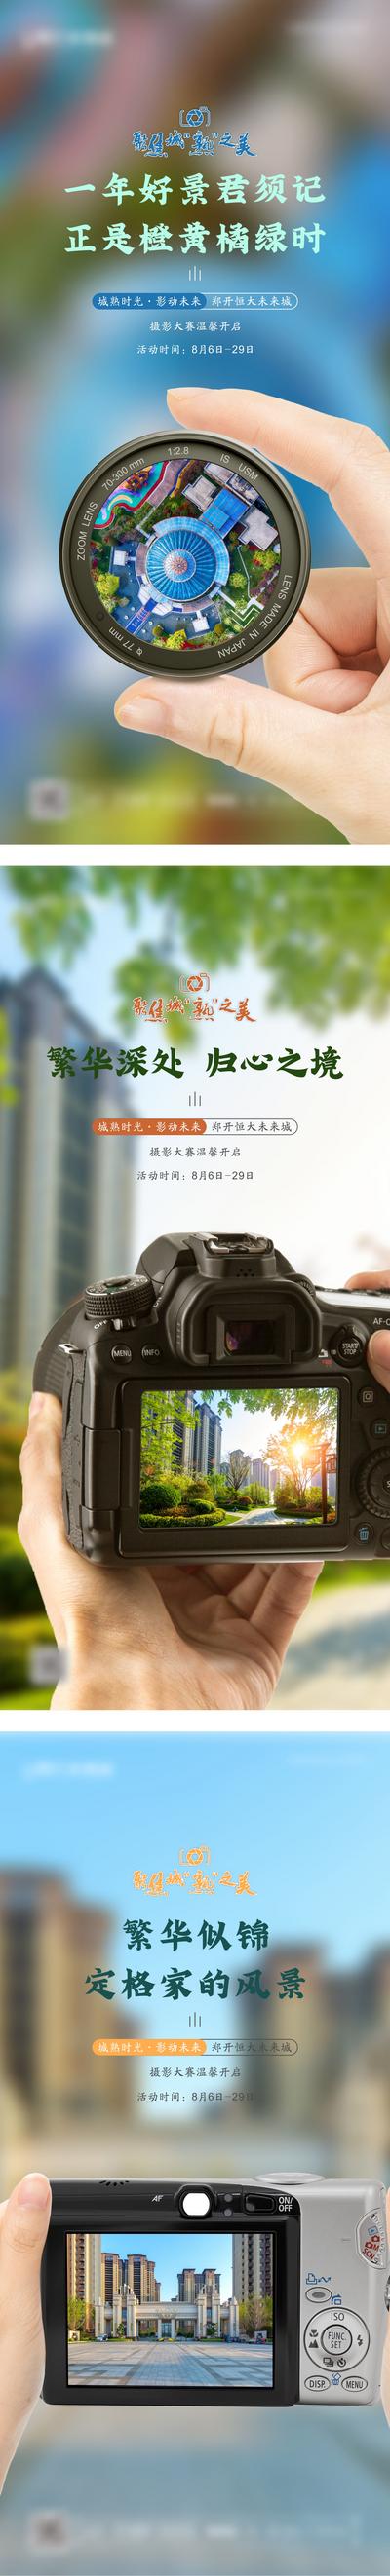 南门网 海报 地产 摄影 大赛 比赛 活动 系列图 相机 镜头